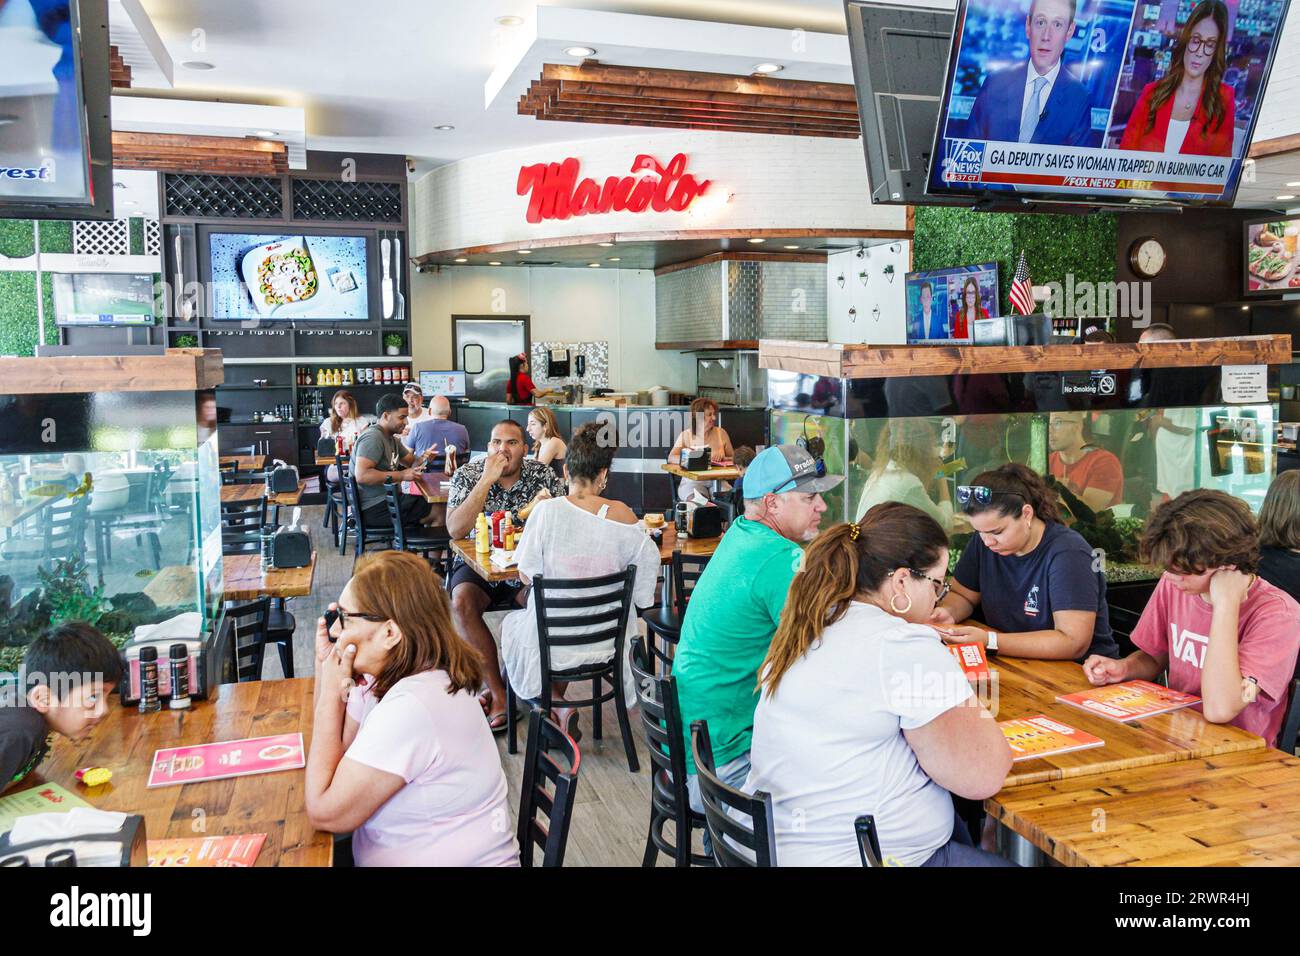 Miami Beach Floride, Manolo, restaurant restaurants cafés bistros entreprises dîner repas à l'extérieur, café bistro décontracté nourriture, magasins d'affaires Banque D'Images